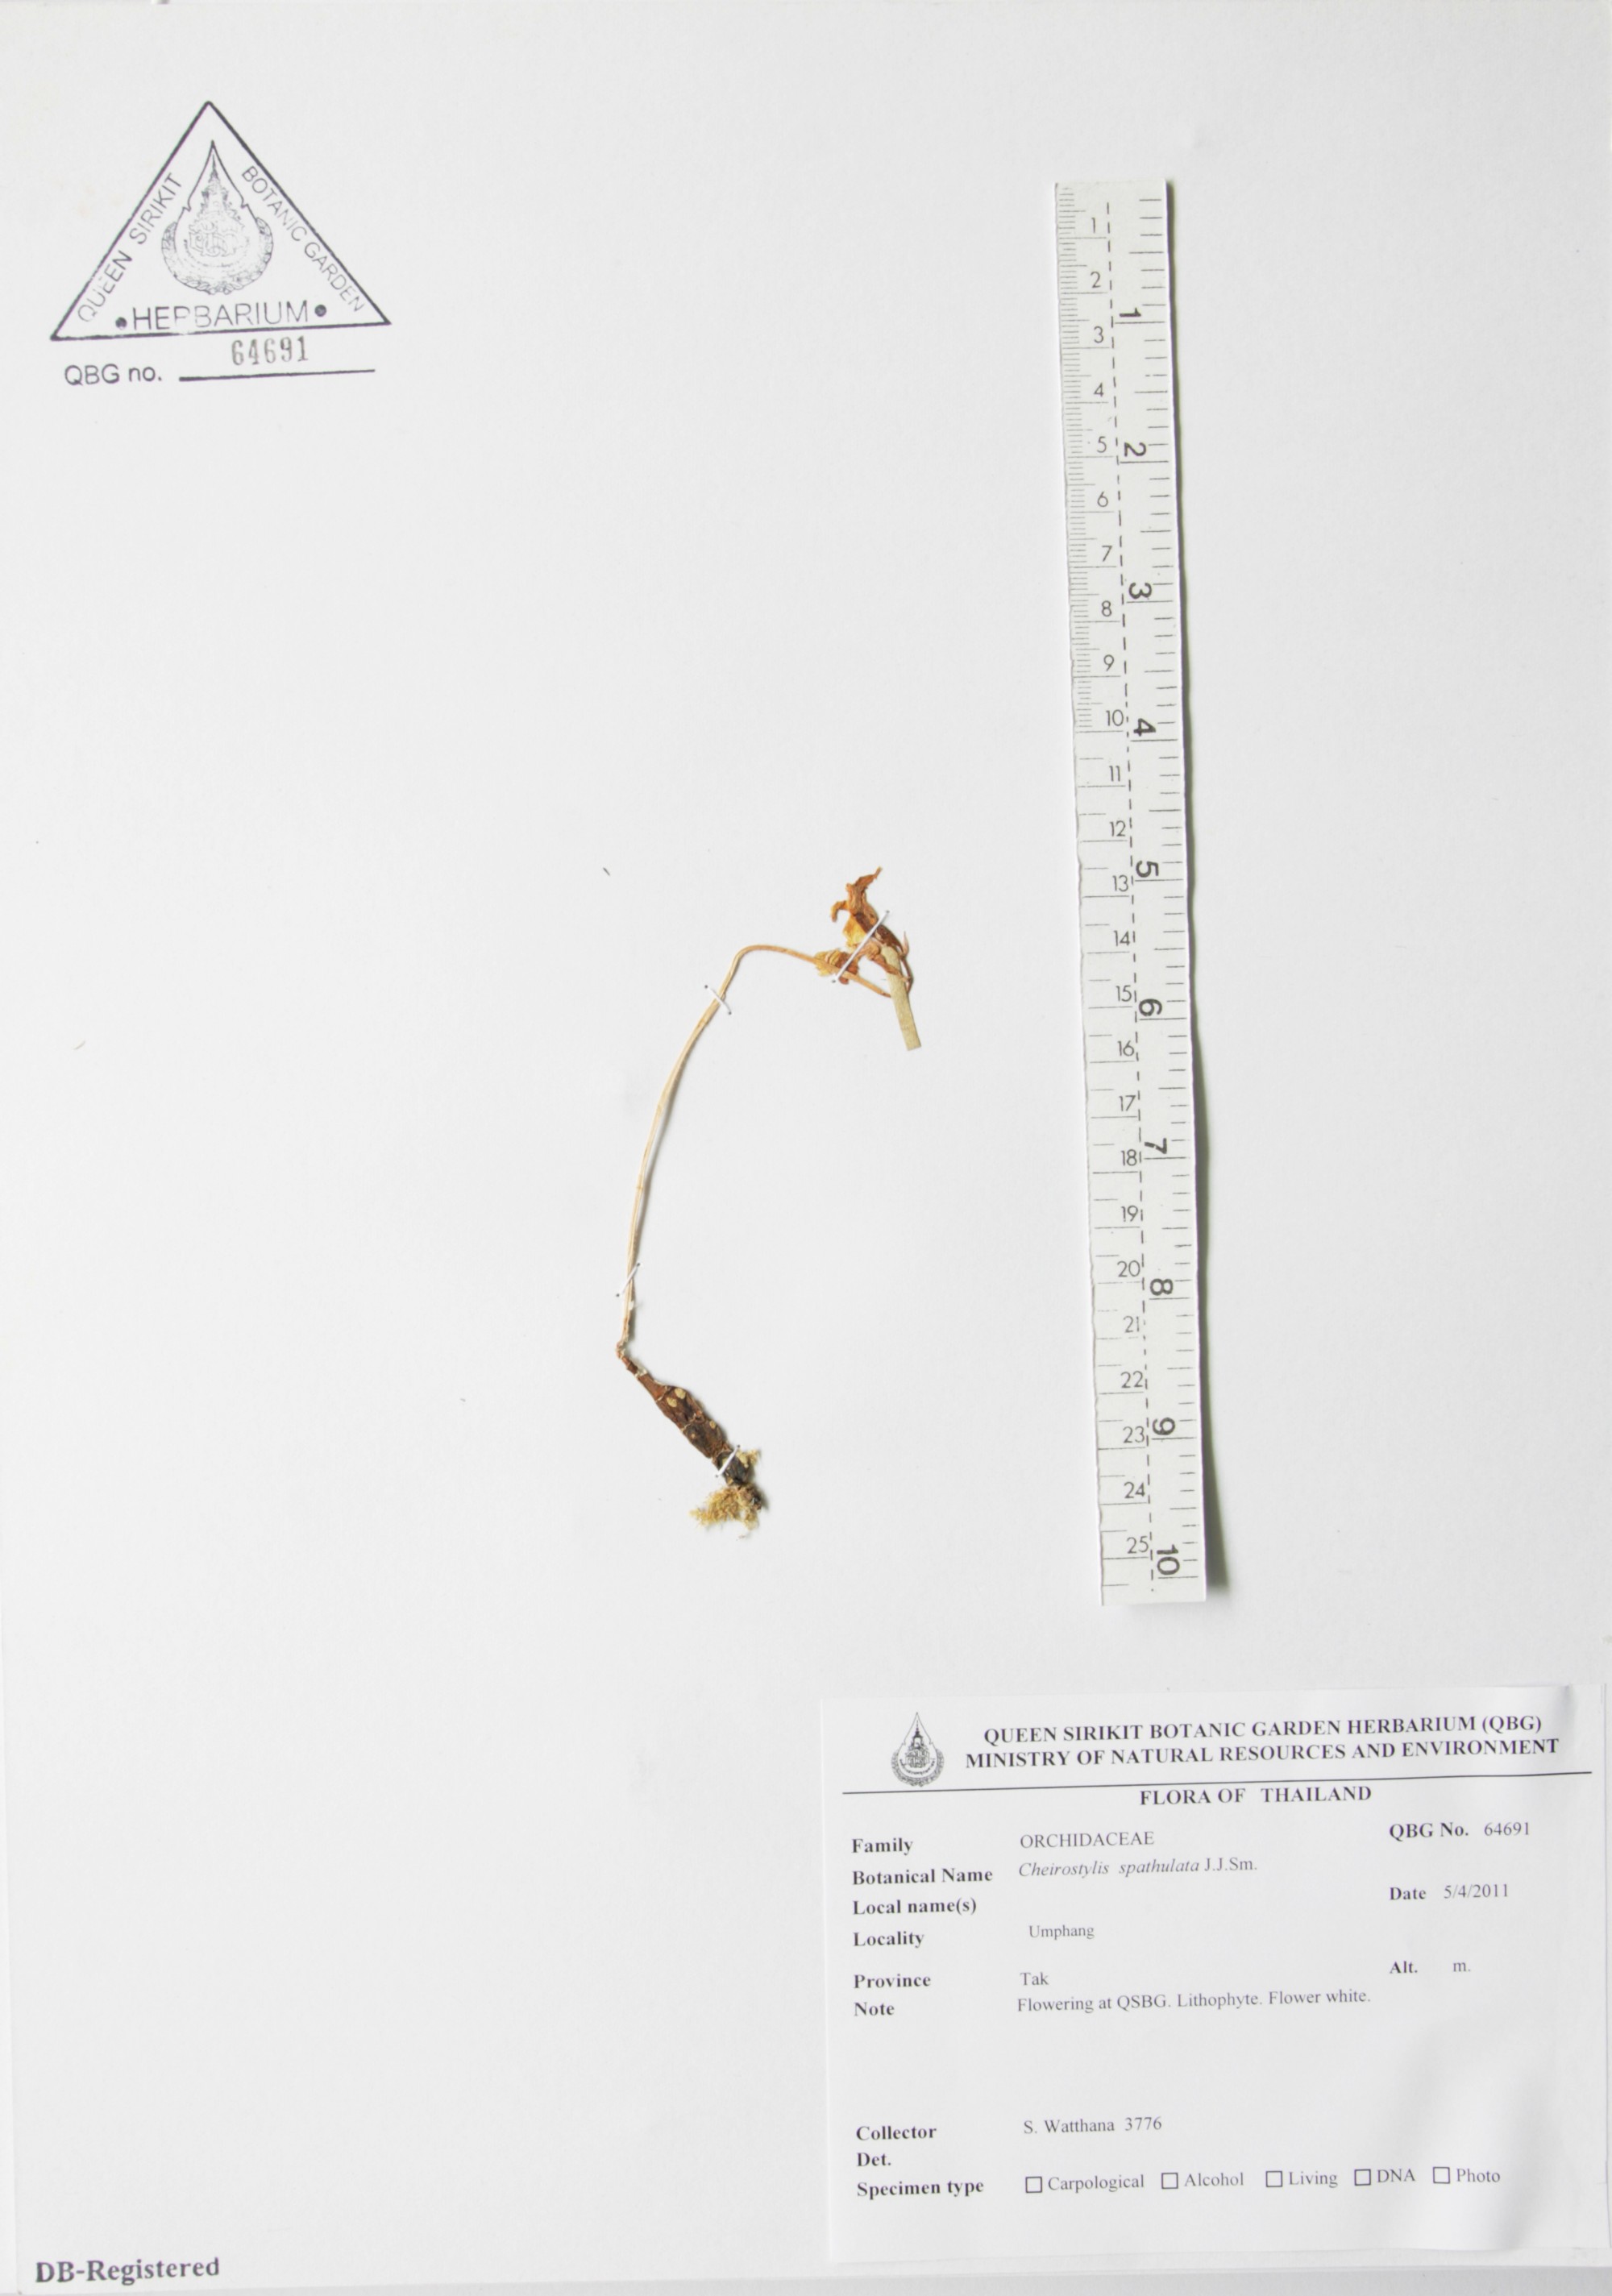 ภาพที่ 1  Cheirostylis spathulata J.J.Sm.